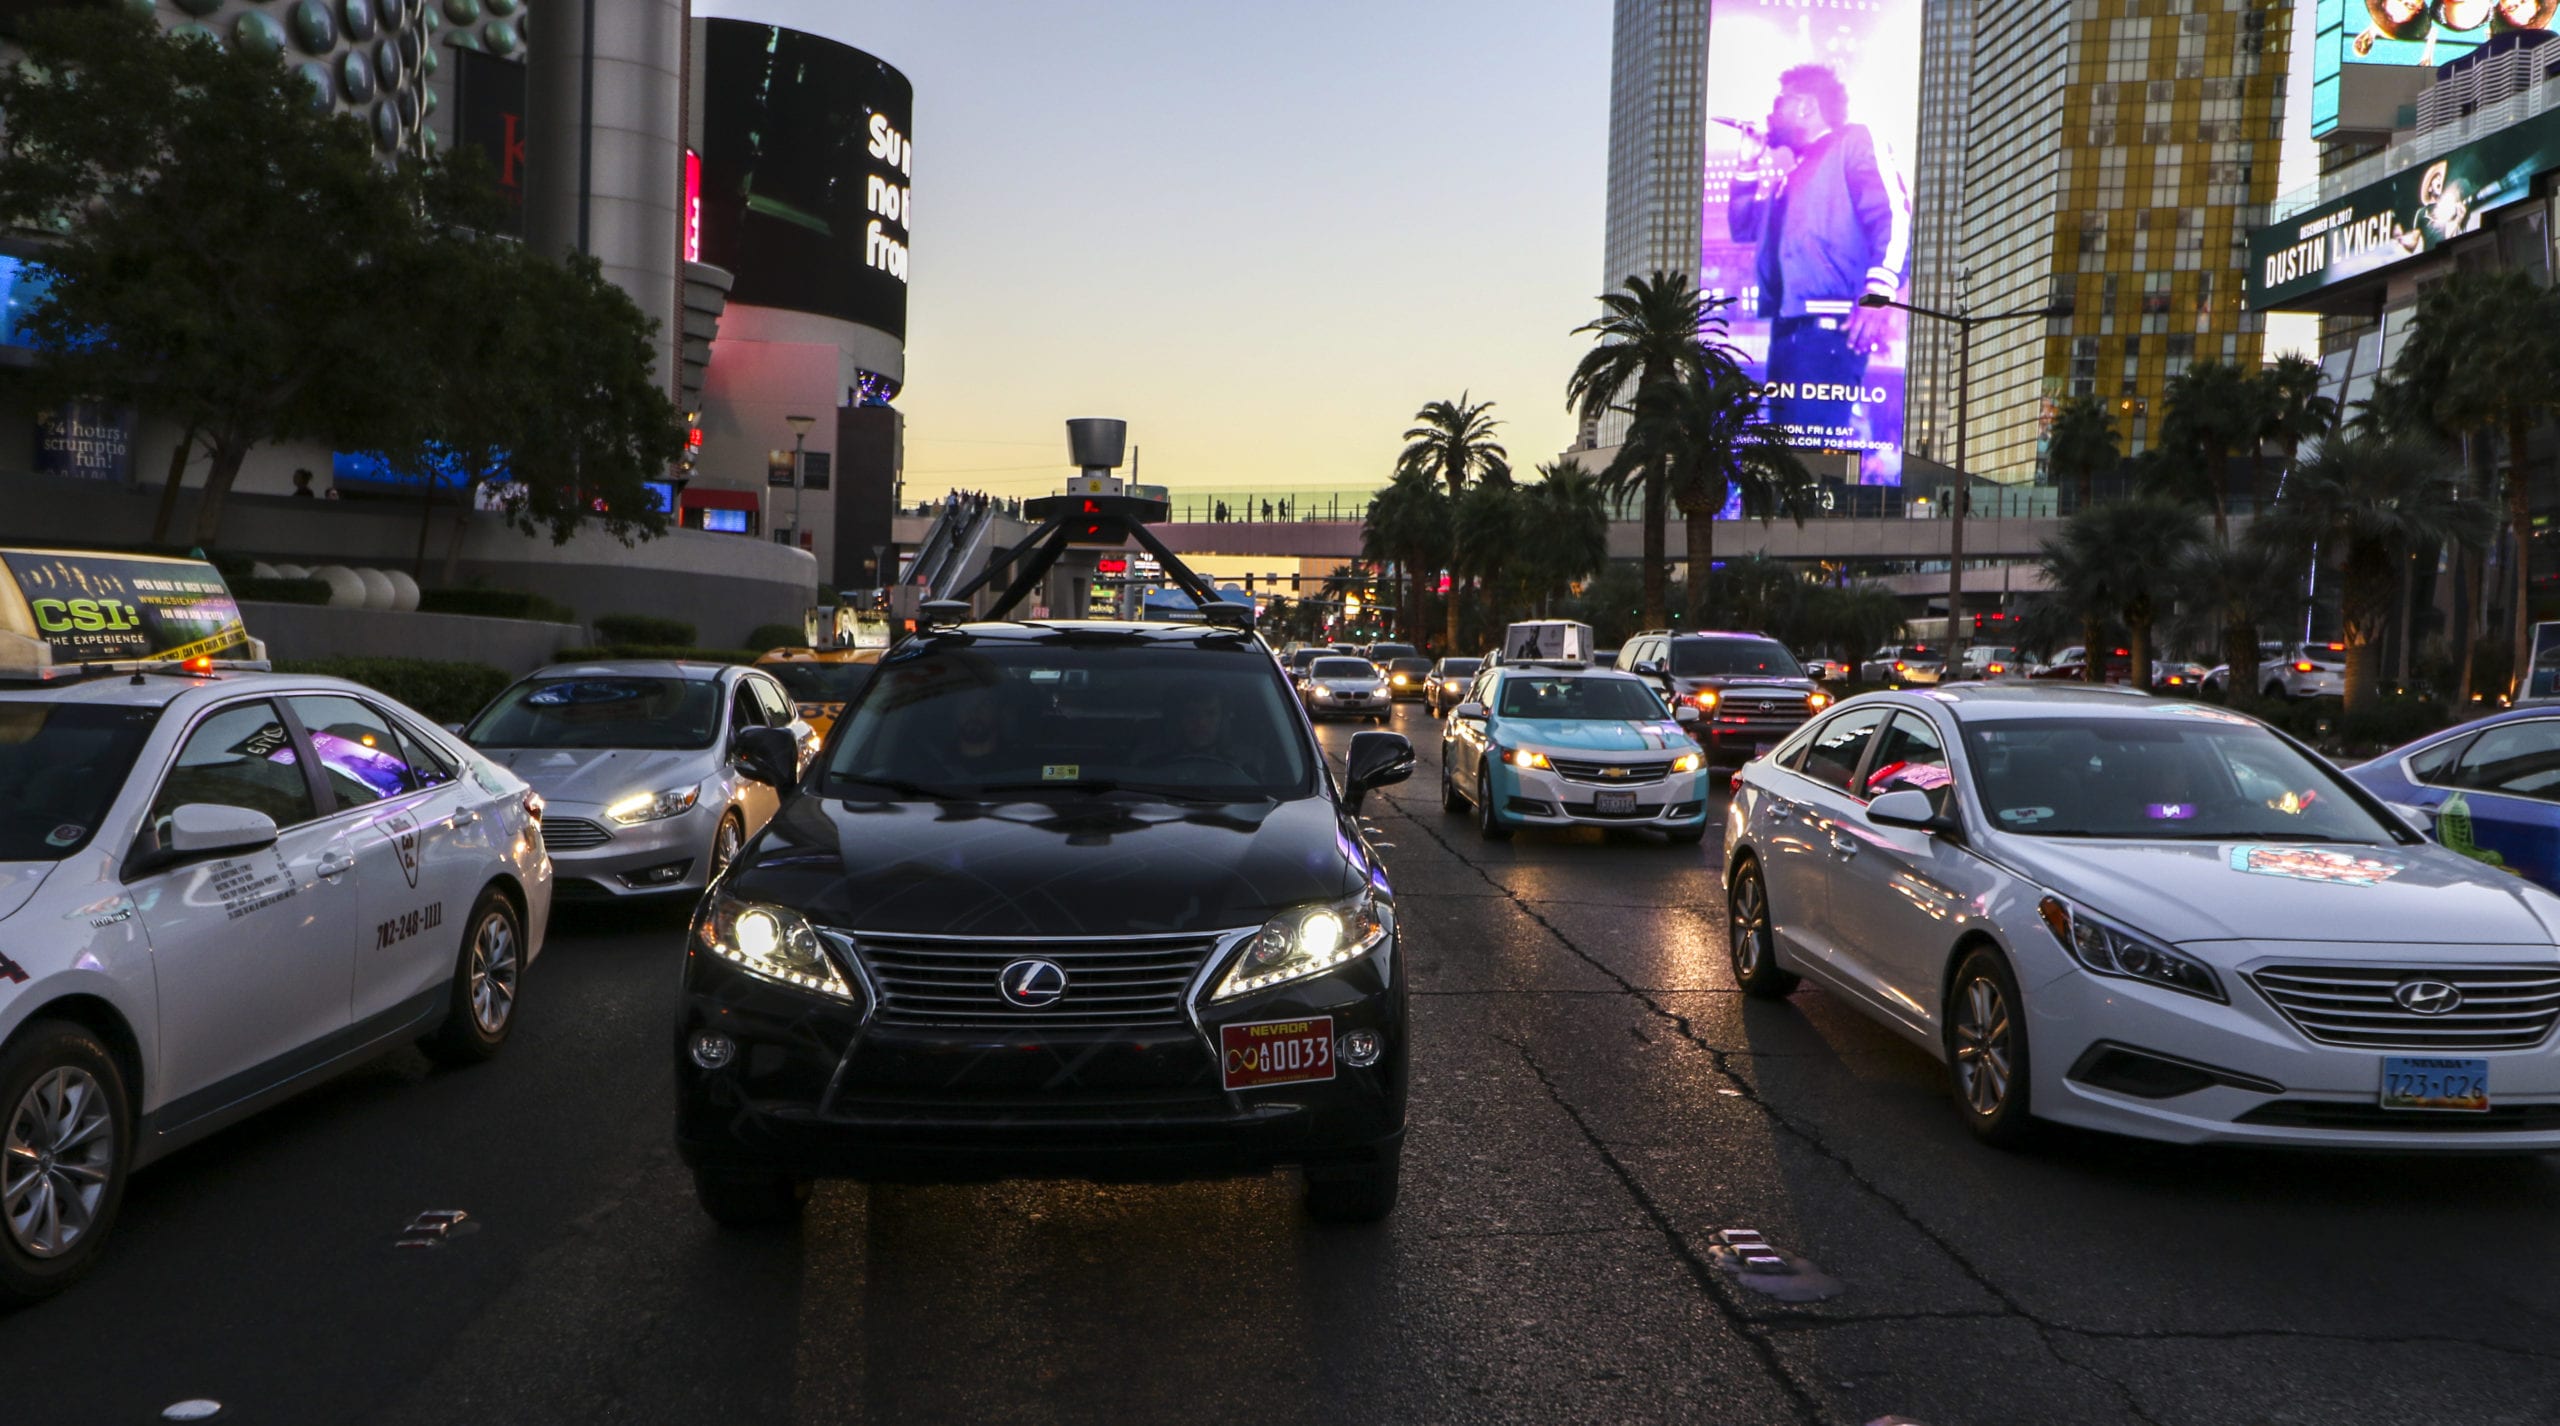 Asimov vehicle in evening traffic in Las Vegas